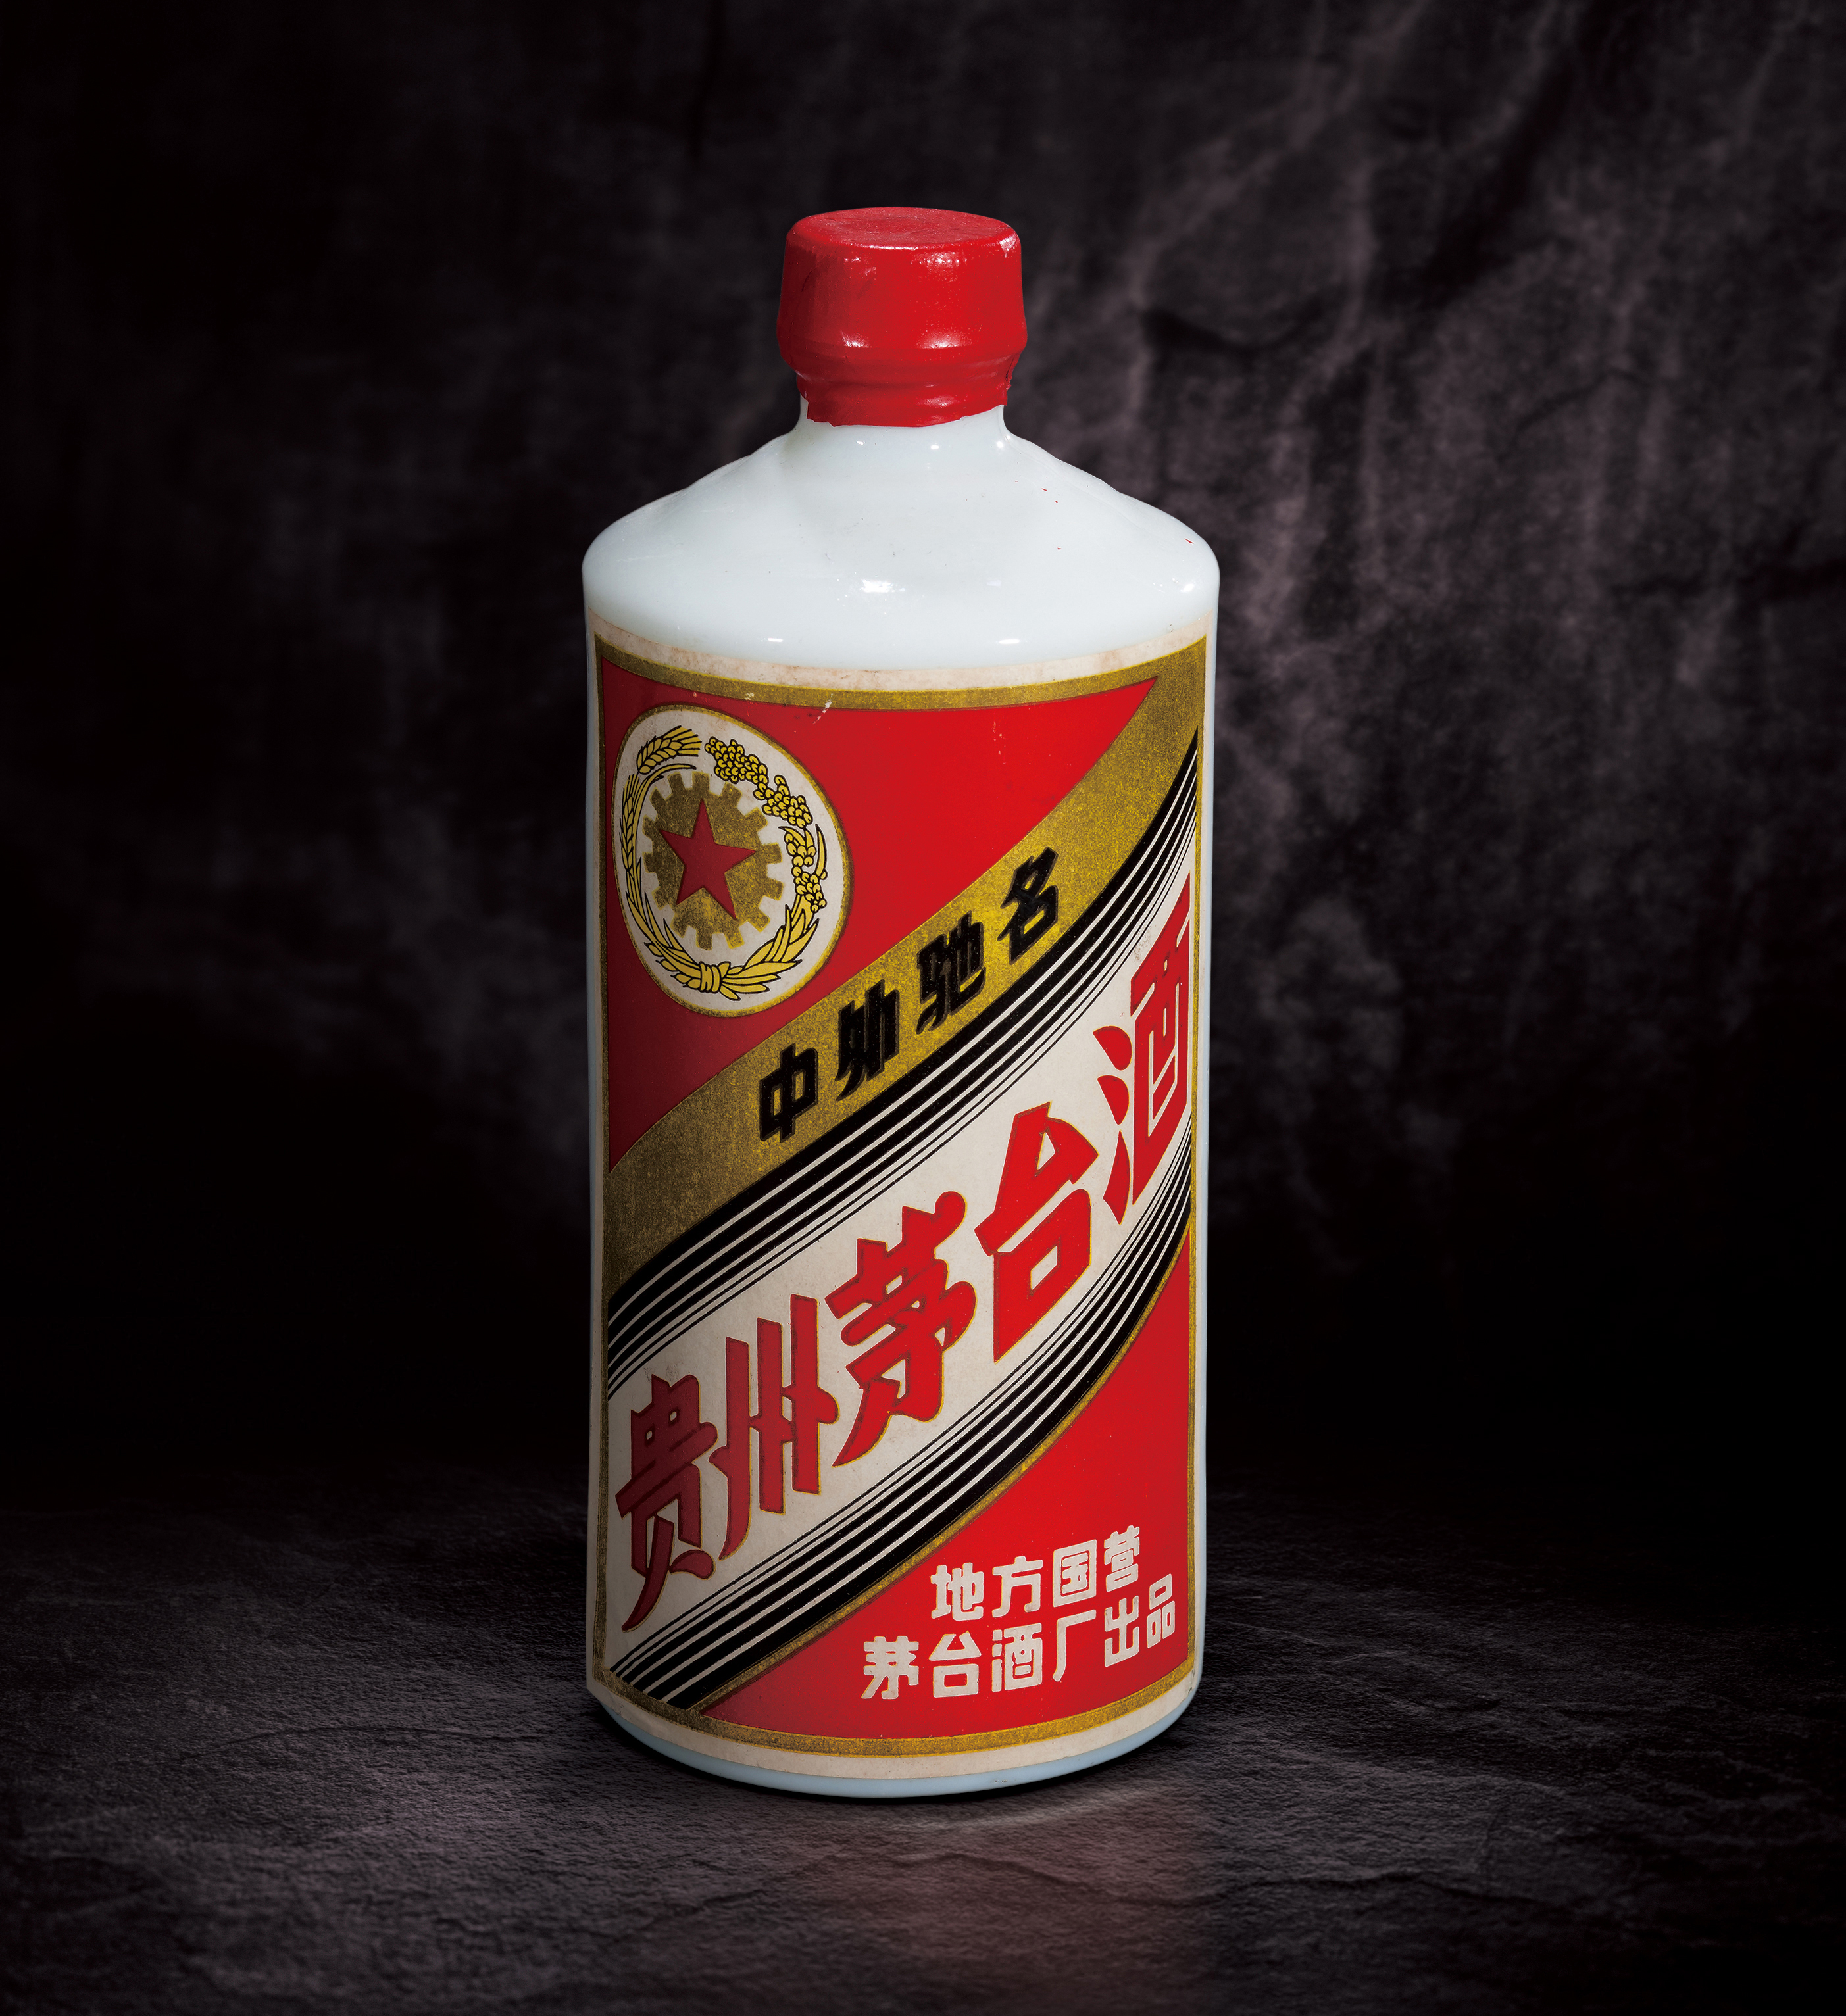 1977年五星牌贵州茅台酒(三大革命)